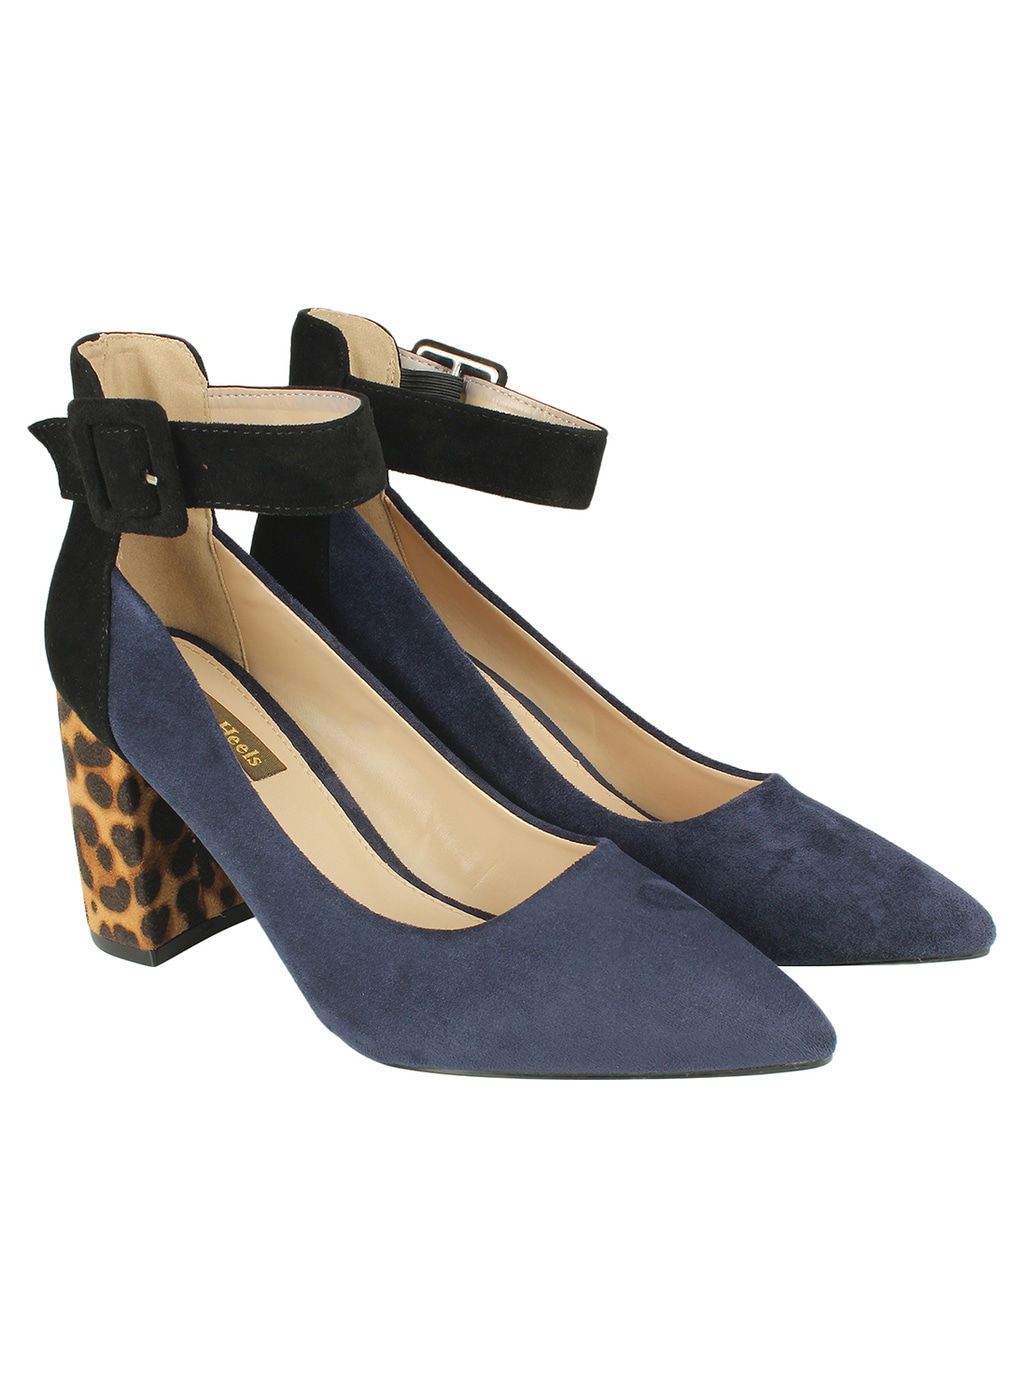 blue heels online